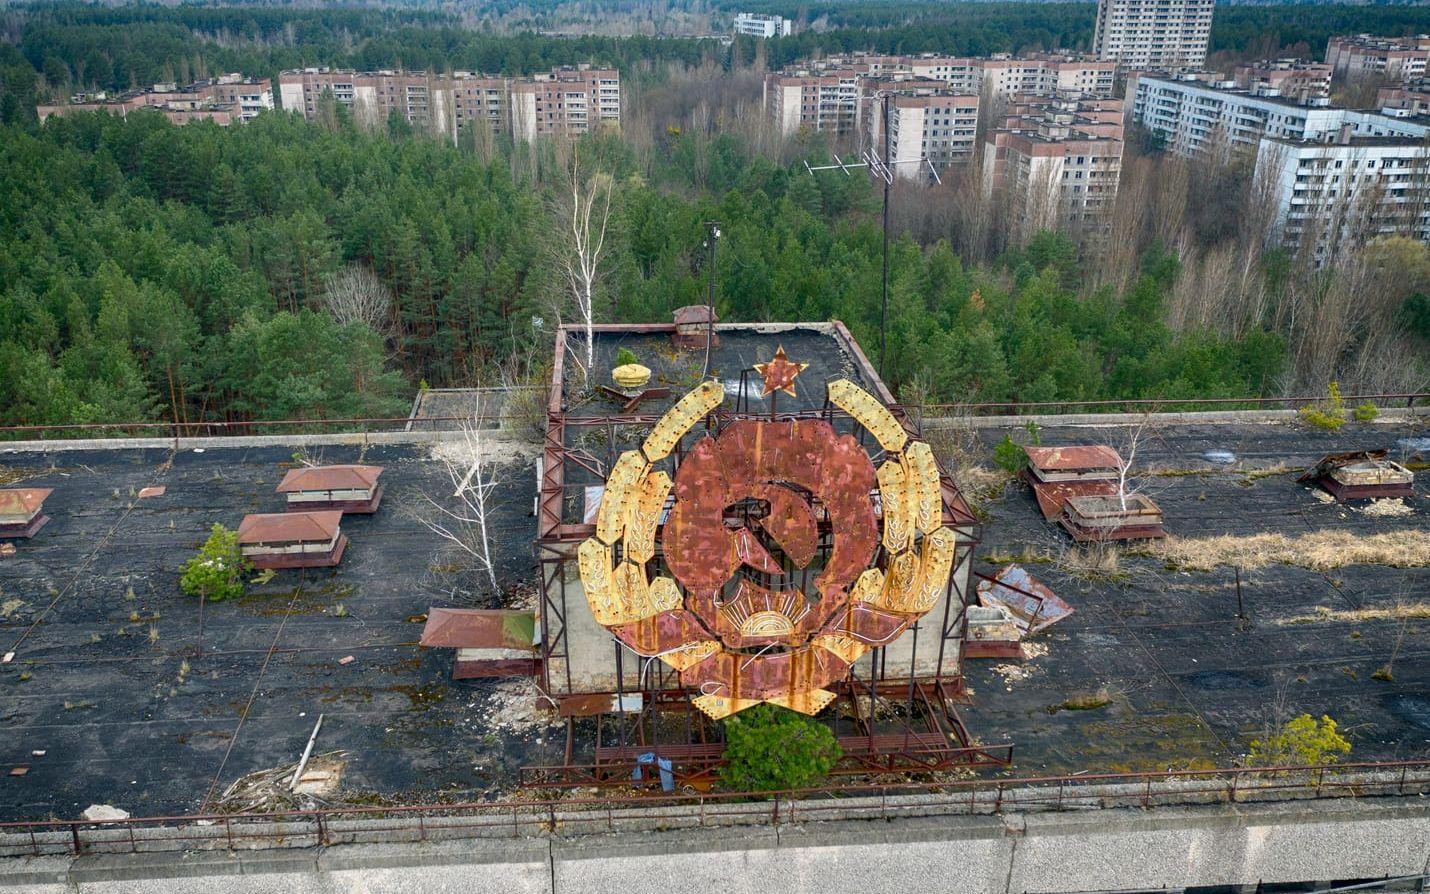 Sovjetunionens emblem sitter kvar på en byggnad i Pripjat. Regimens hantering av katastrofen och försöken att tysta ner den skyndade på Sovjetunionens sönderfall, enligt många experter.